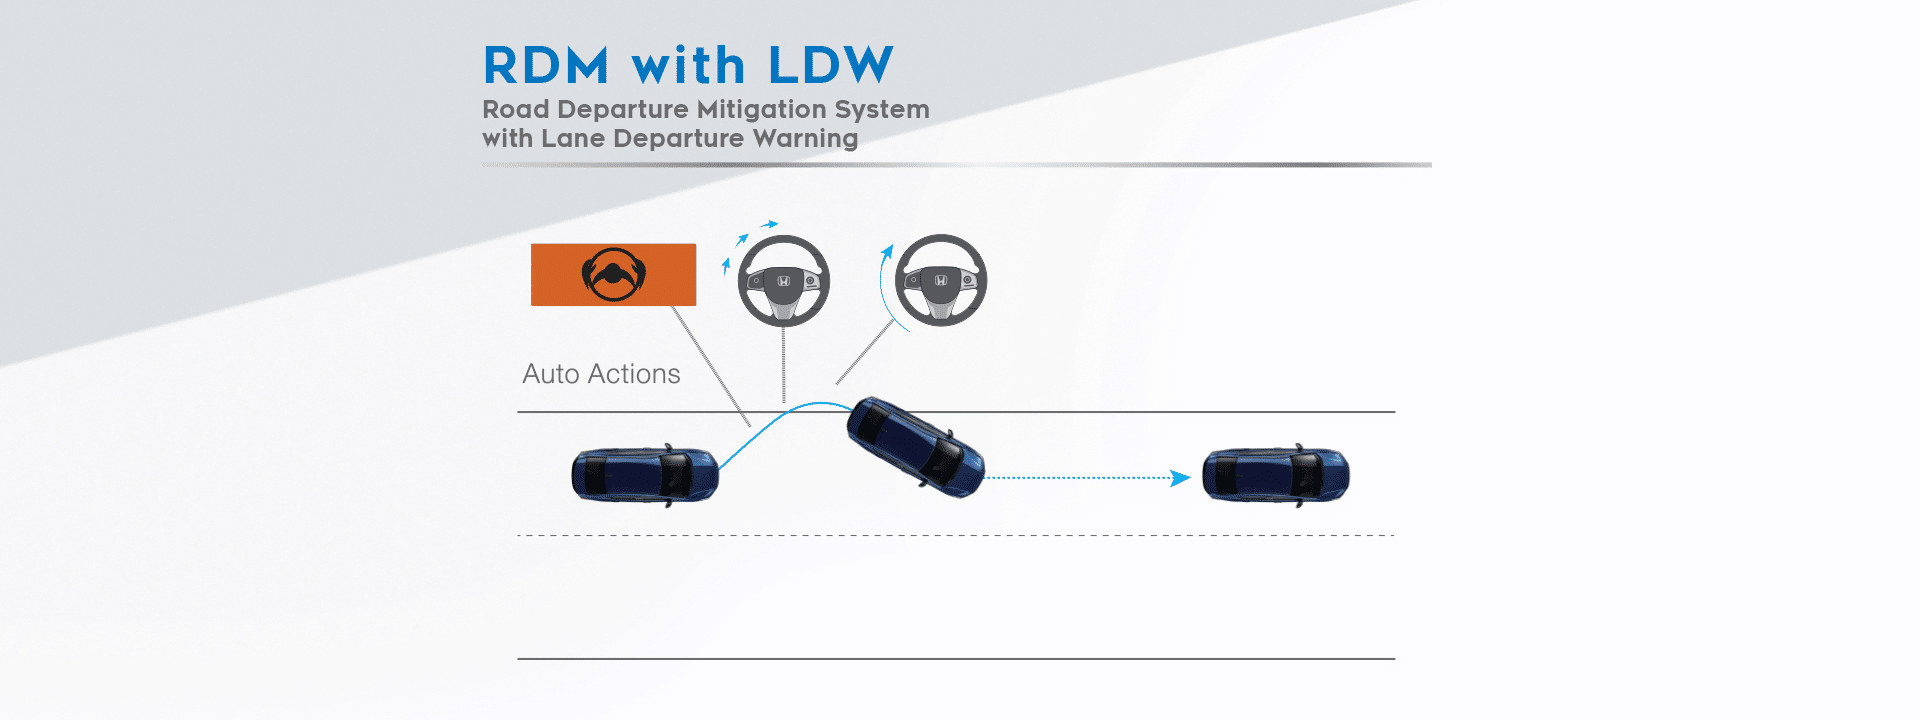 ระบบเตือนและช่วยควบคุมเมื่อรถออกนอกช่องทางเดินรถ (Road Departure Mitigation System with Lane Departure Warning: RDM with LDW) 